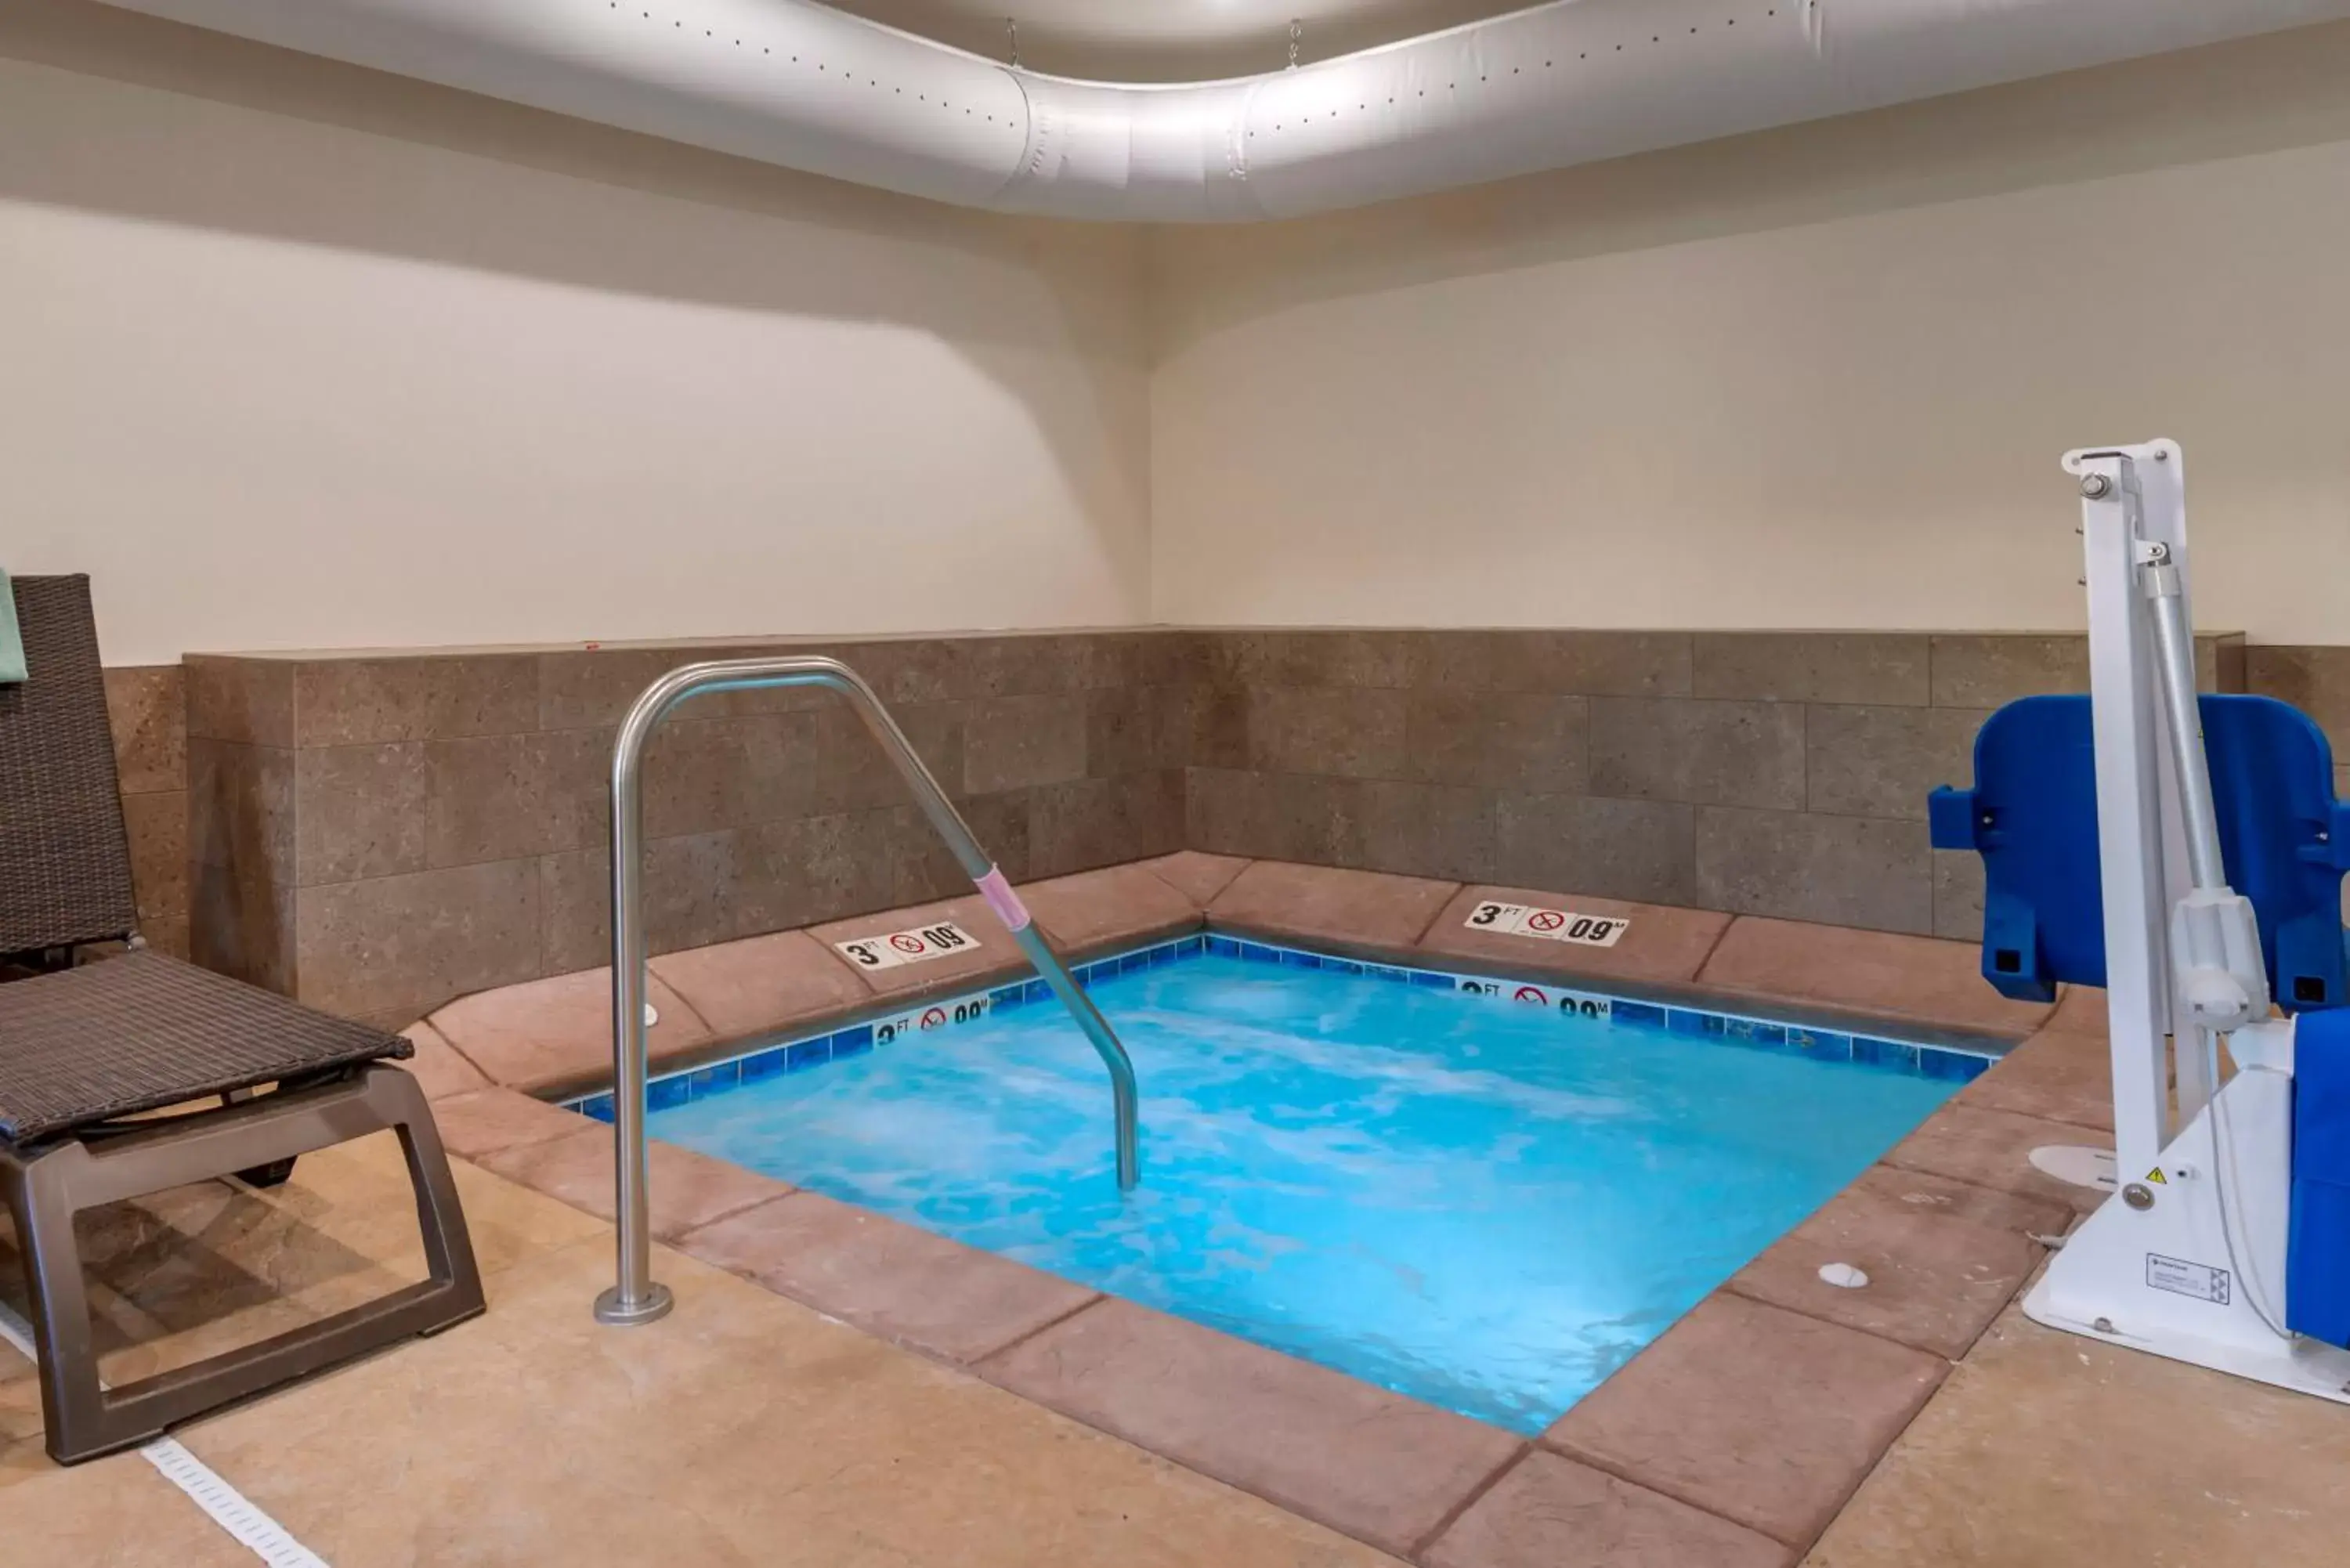 Hot Tub, Swimming Pool in Comfort Inn & Suites